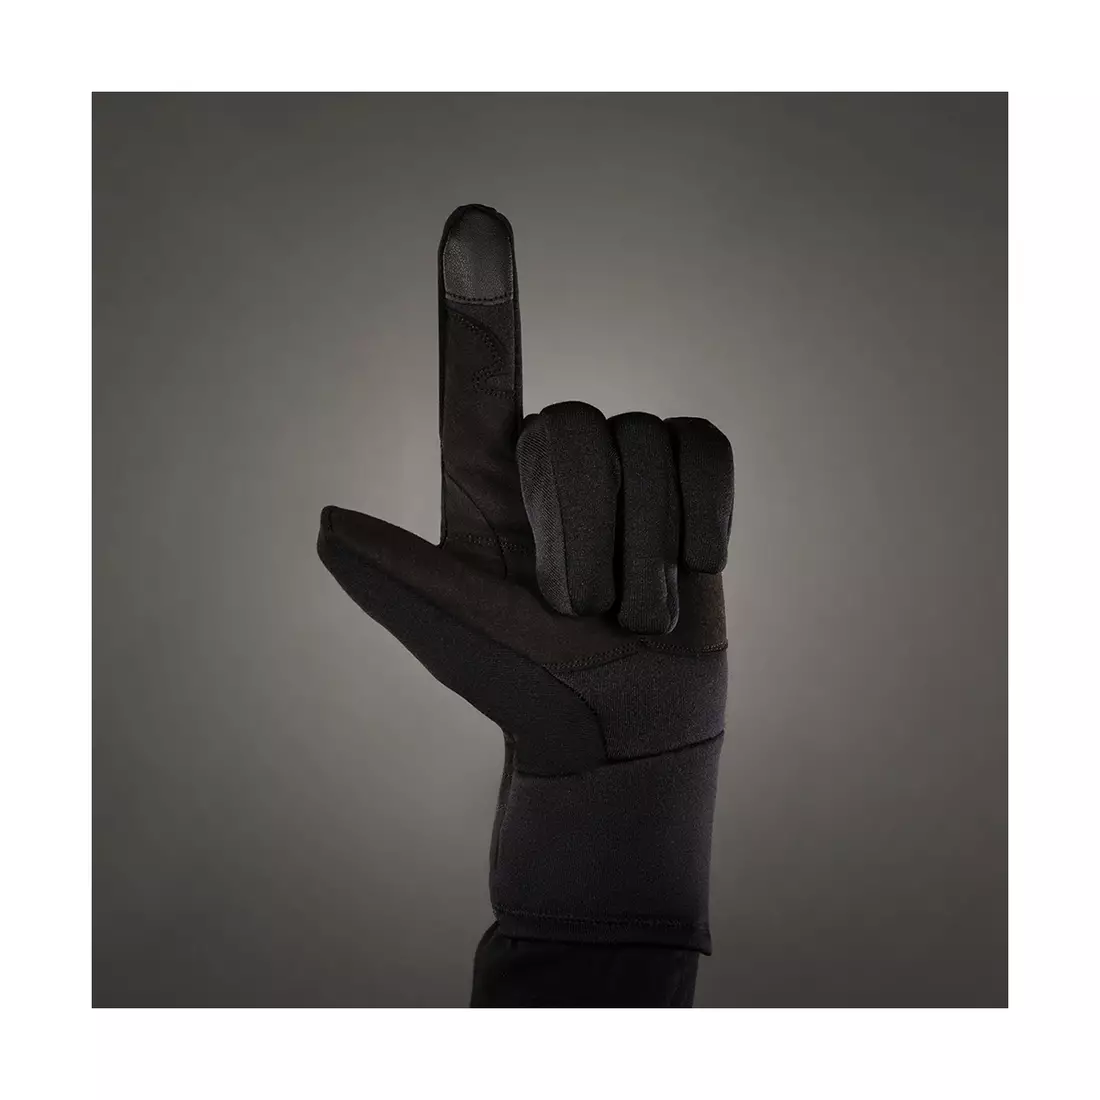 CHIBA POLARFLEECE TITAN mănuși de iarnă, negre 